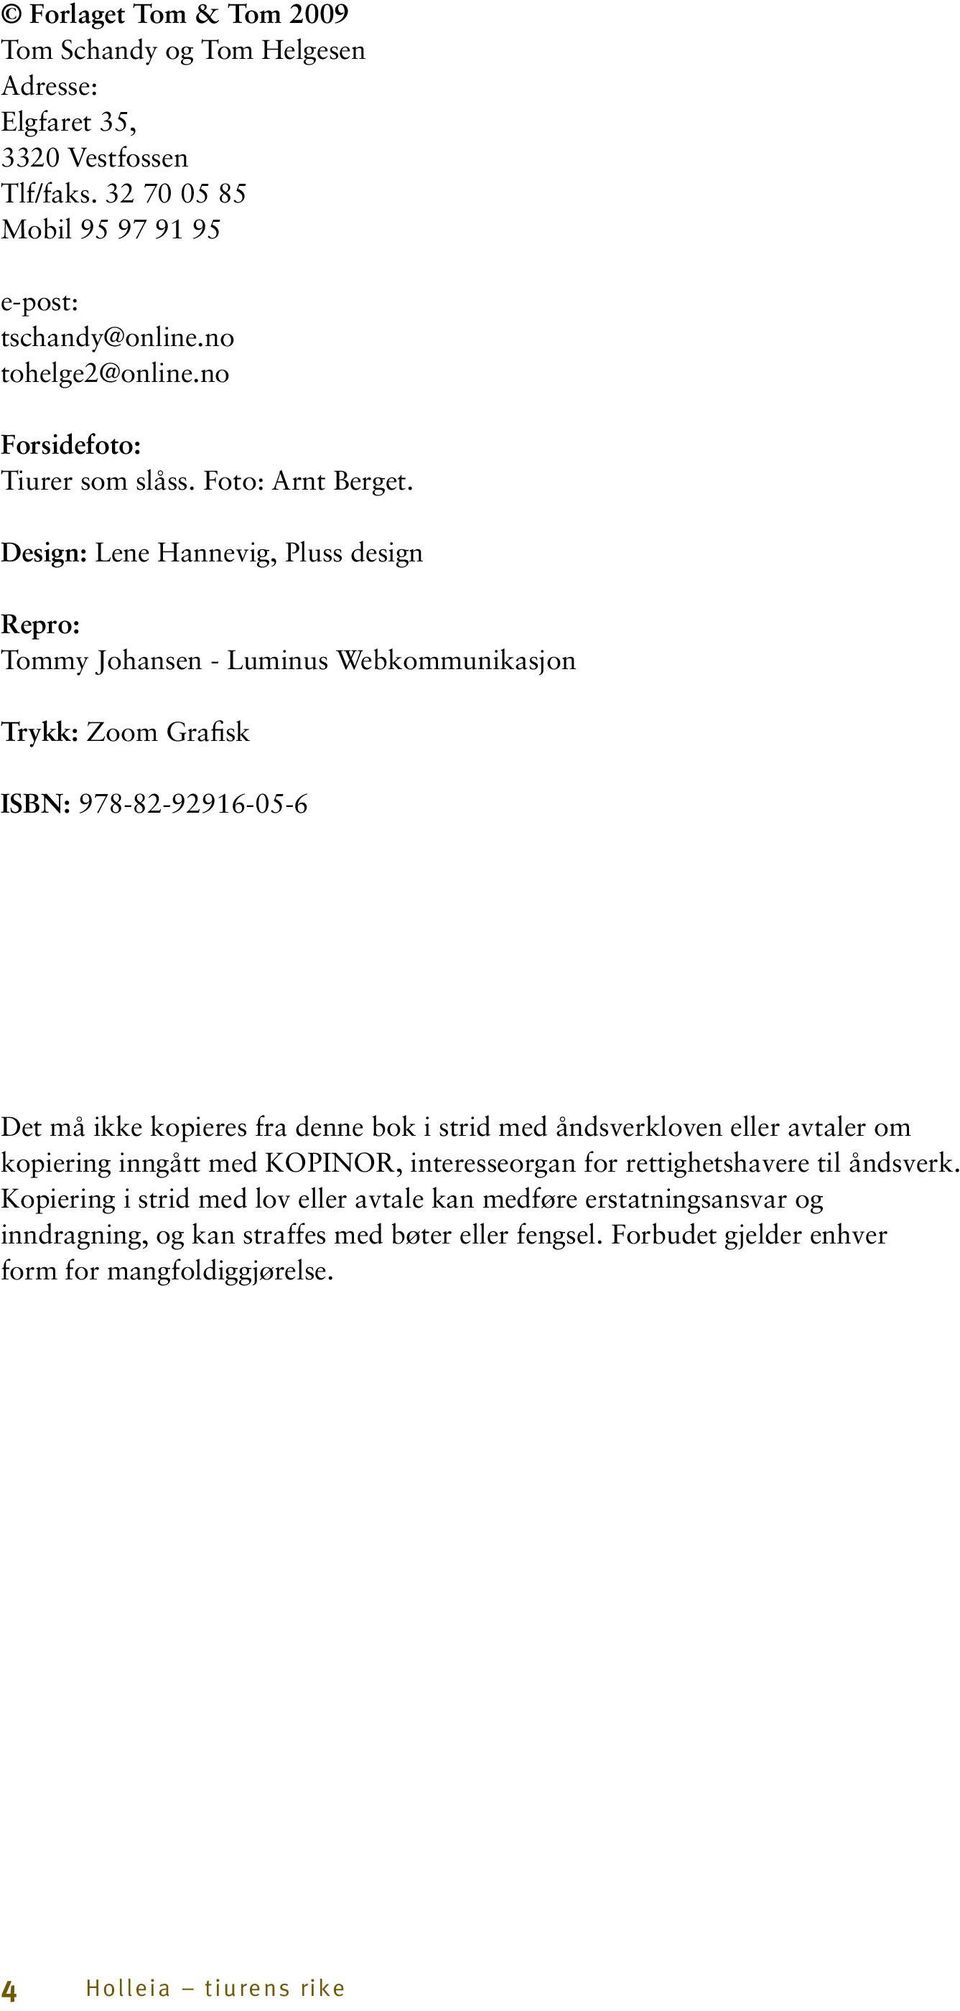 Design: Lene Hannevig, Pluss design Repro: Tommy Johansen - Luminus Webkommunikasjon Trykk: Zoom Grafisk ISBN: 978-82-92916-05-6 Det må ikke kopieres fra denne bok i strid med